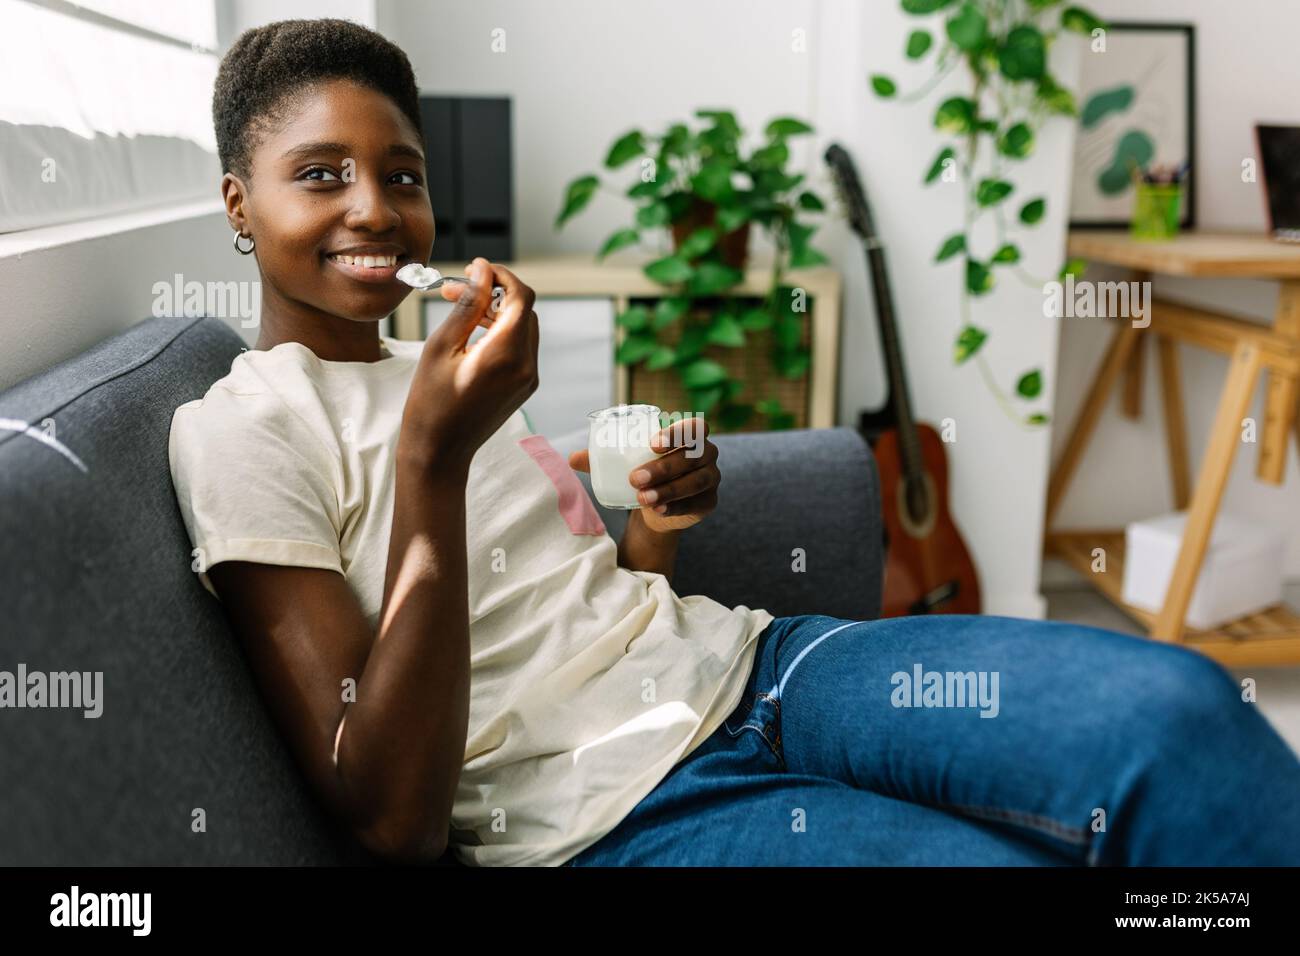 Glückliche junge afrikanische Frau, die sich auf dem Sofa entspannt und Bio-Joghurt isst Stockfoto